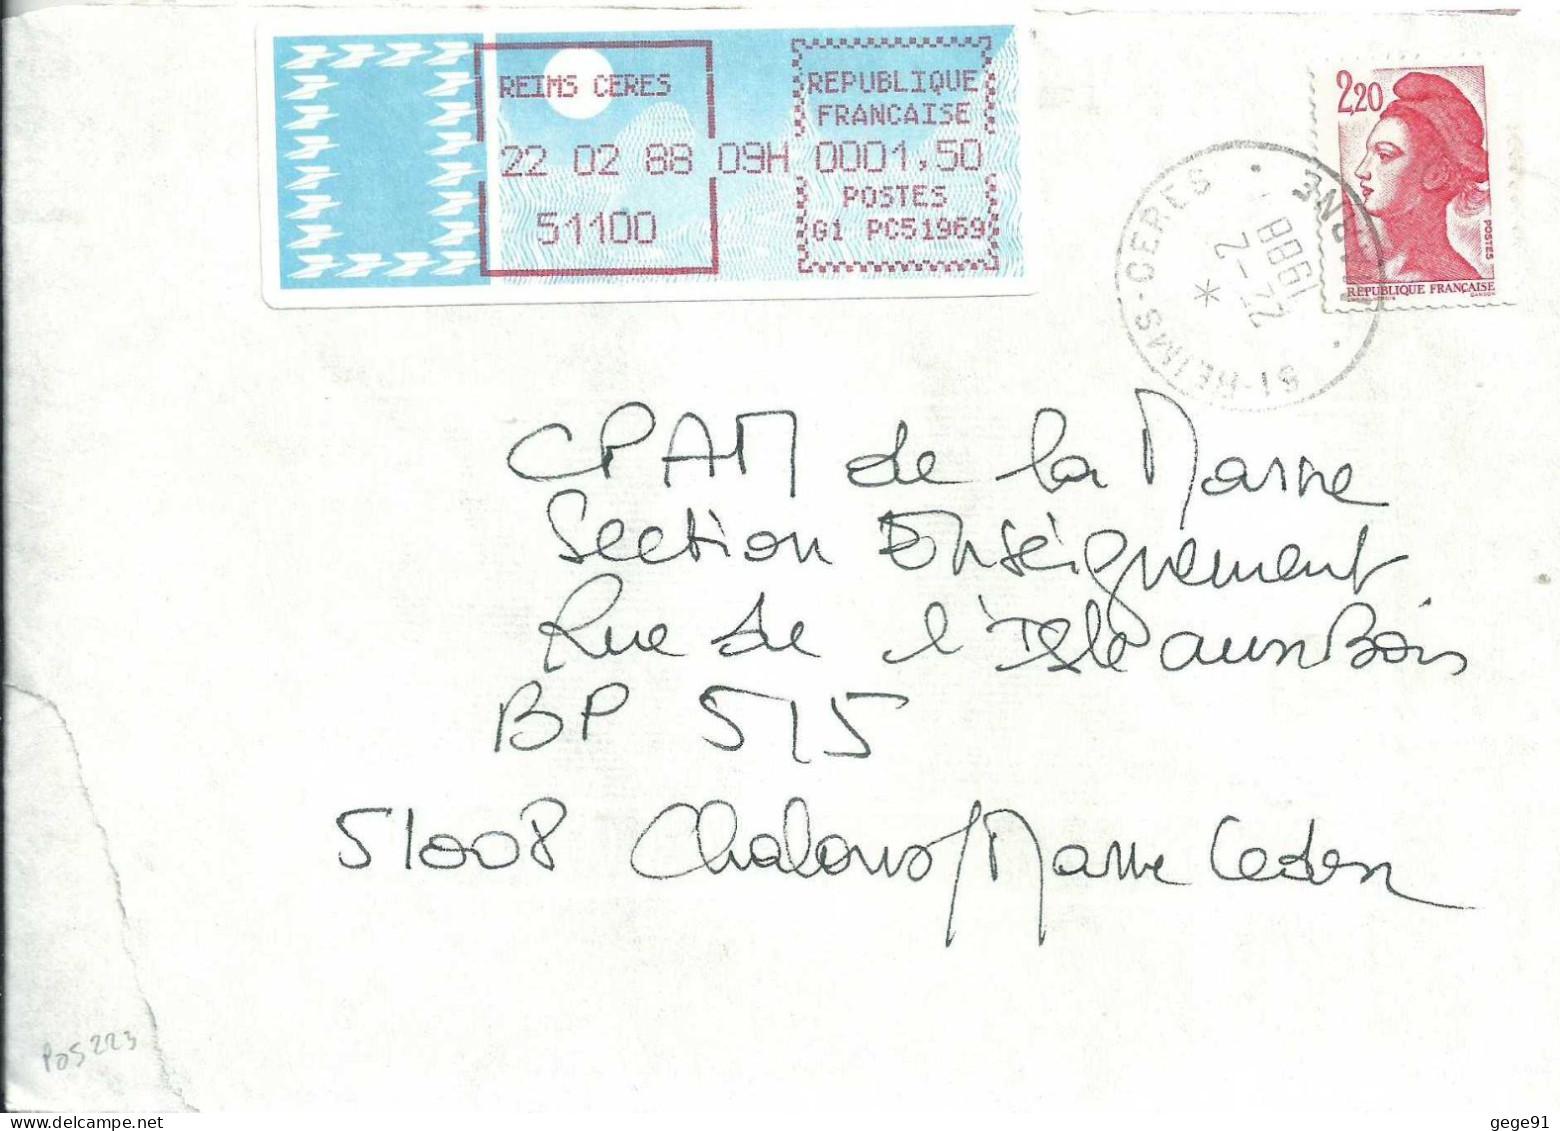 Vignette D'affranchissement - MOG - Reims Céres - Marne - Complément D'affranchissement - 1985 « Carrier » Papier